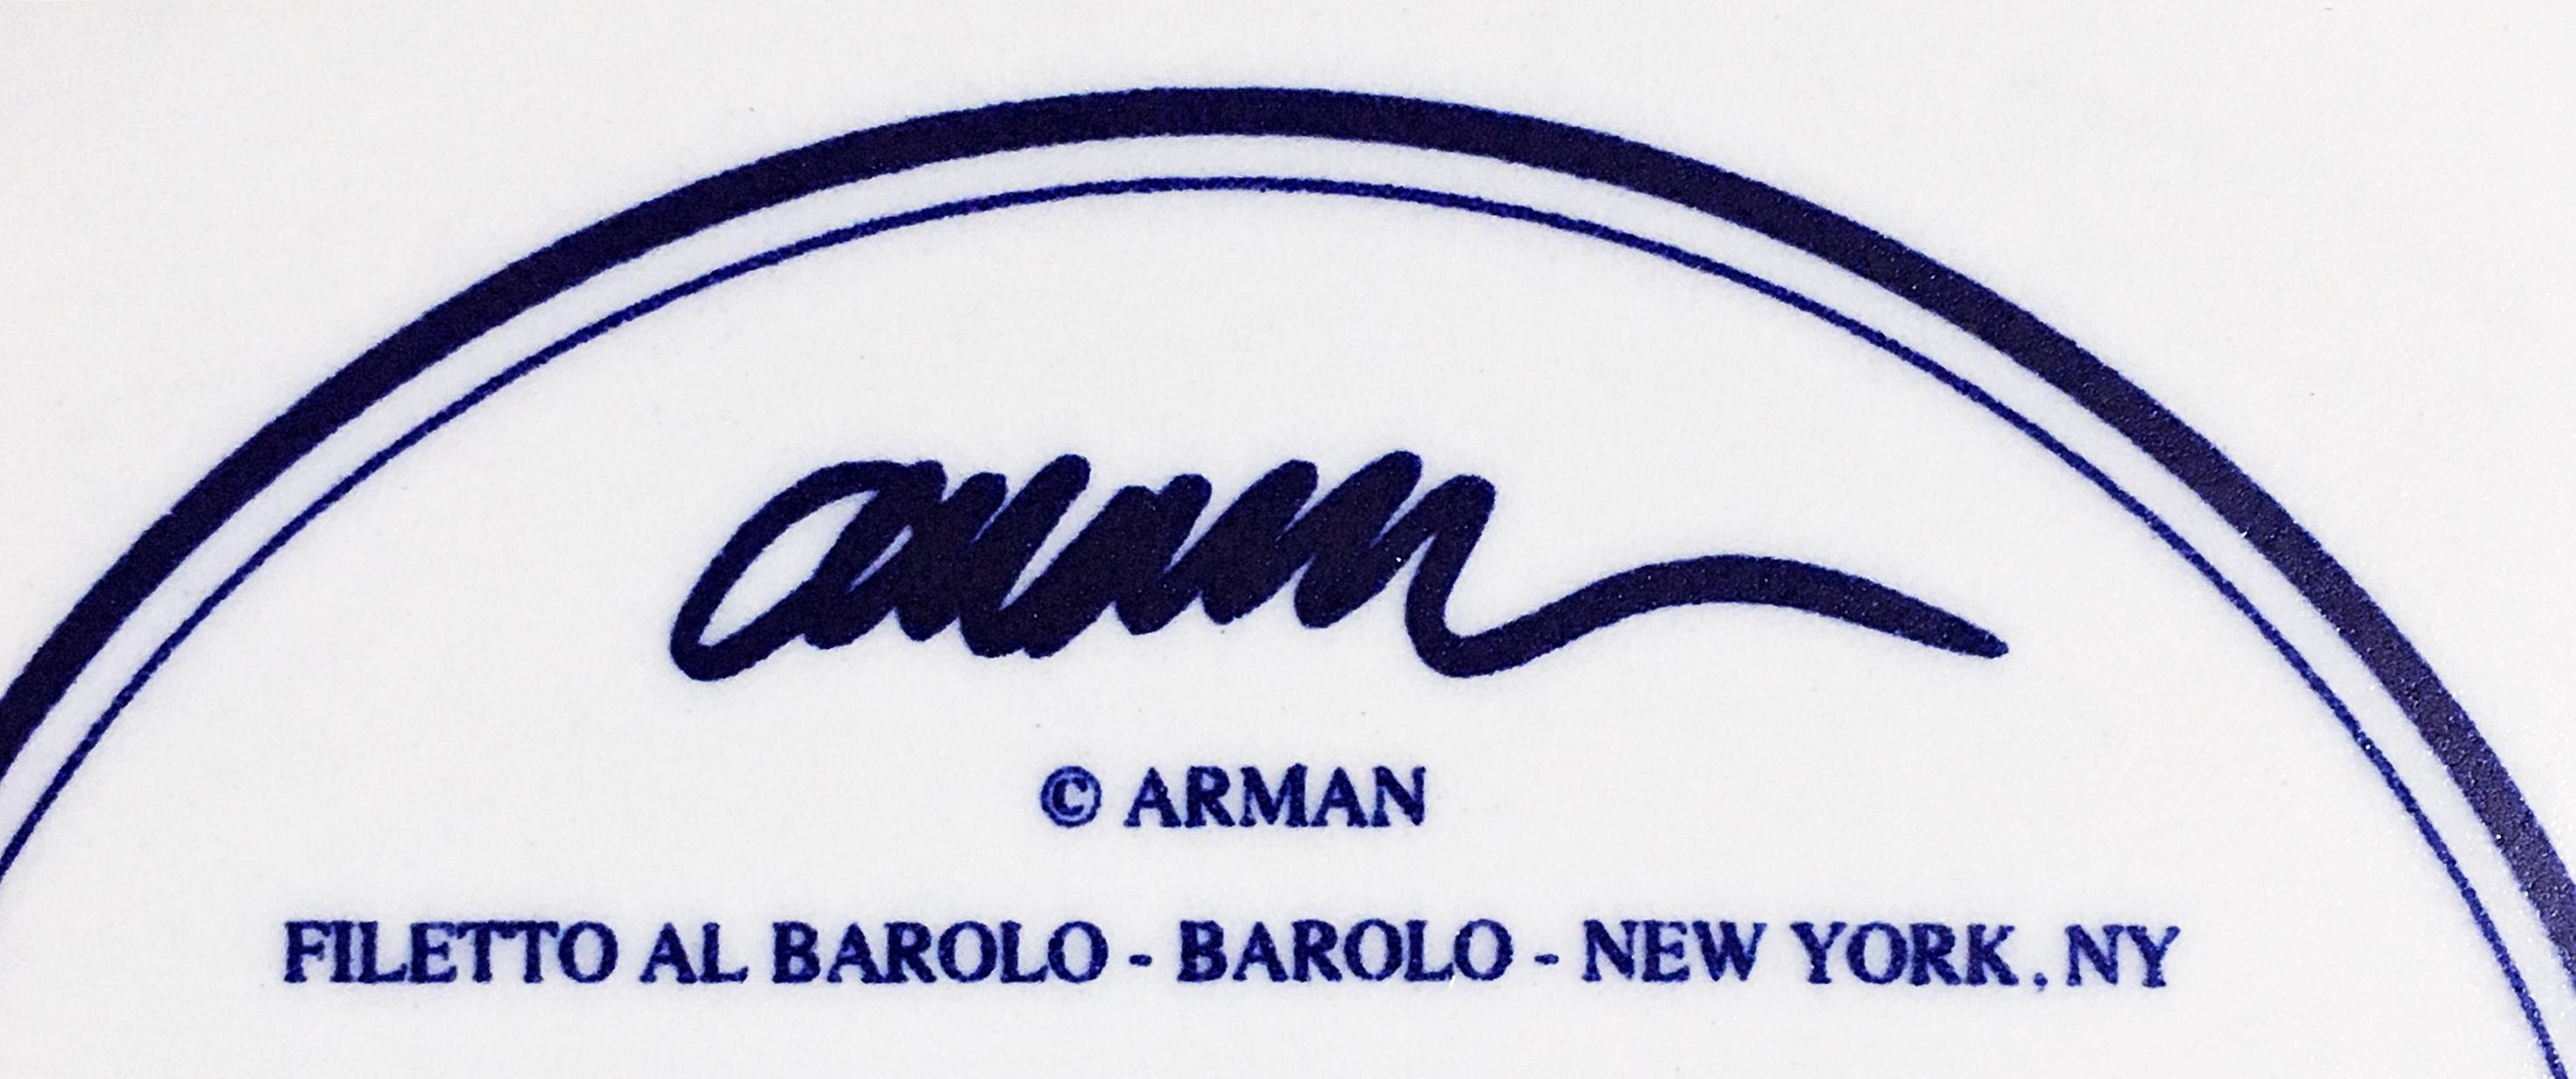 Arman
Filetto Al Barolo - Barolo - New York, NY, 1998
Keramische Platte
Signiert in der Platte, Künstlersignatur in die Platte auf der Vorder- und Rückseite eingebrannt und nummeriert 157 von der Auflage von 1000. (weit weniger gemacht)
10 3/10 Zoll